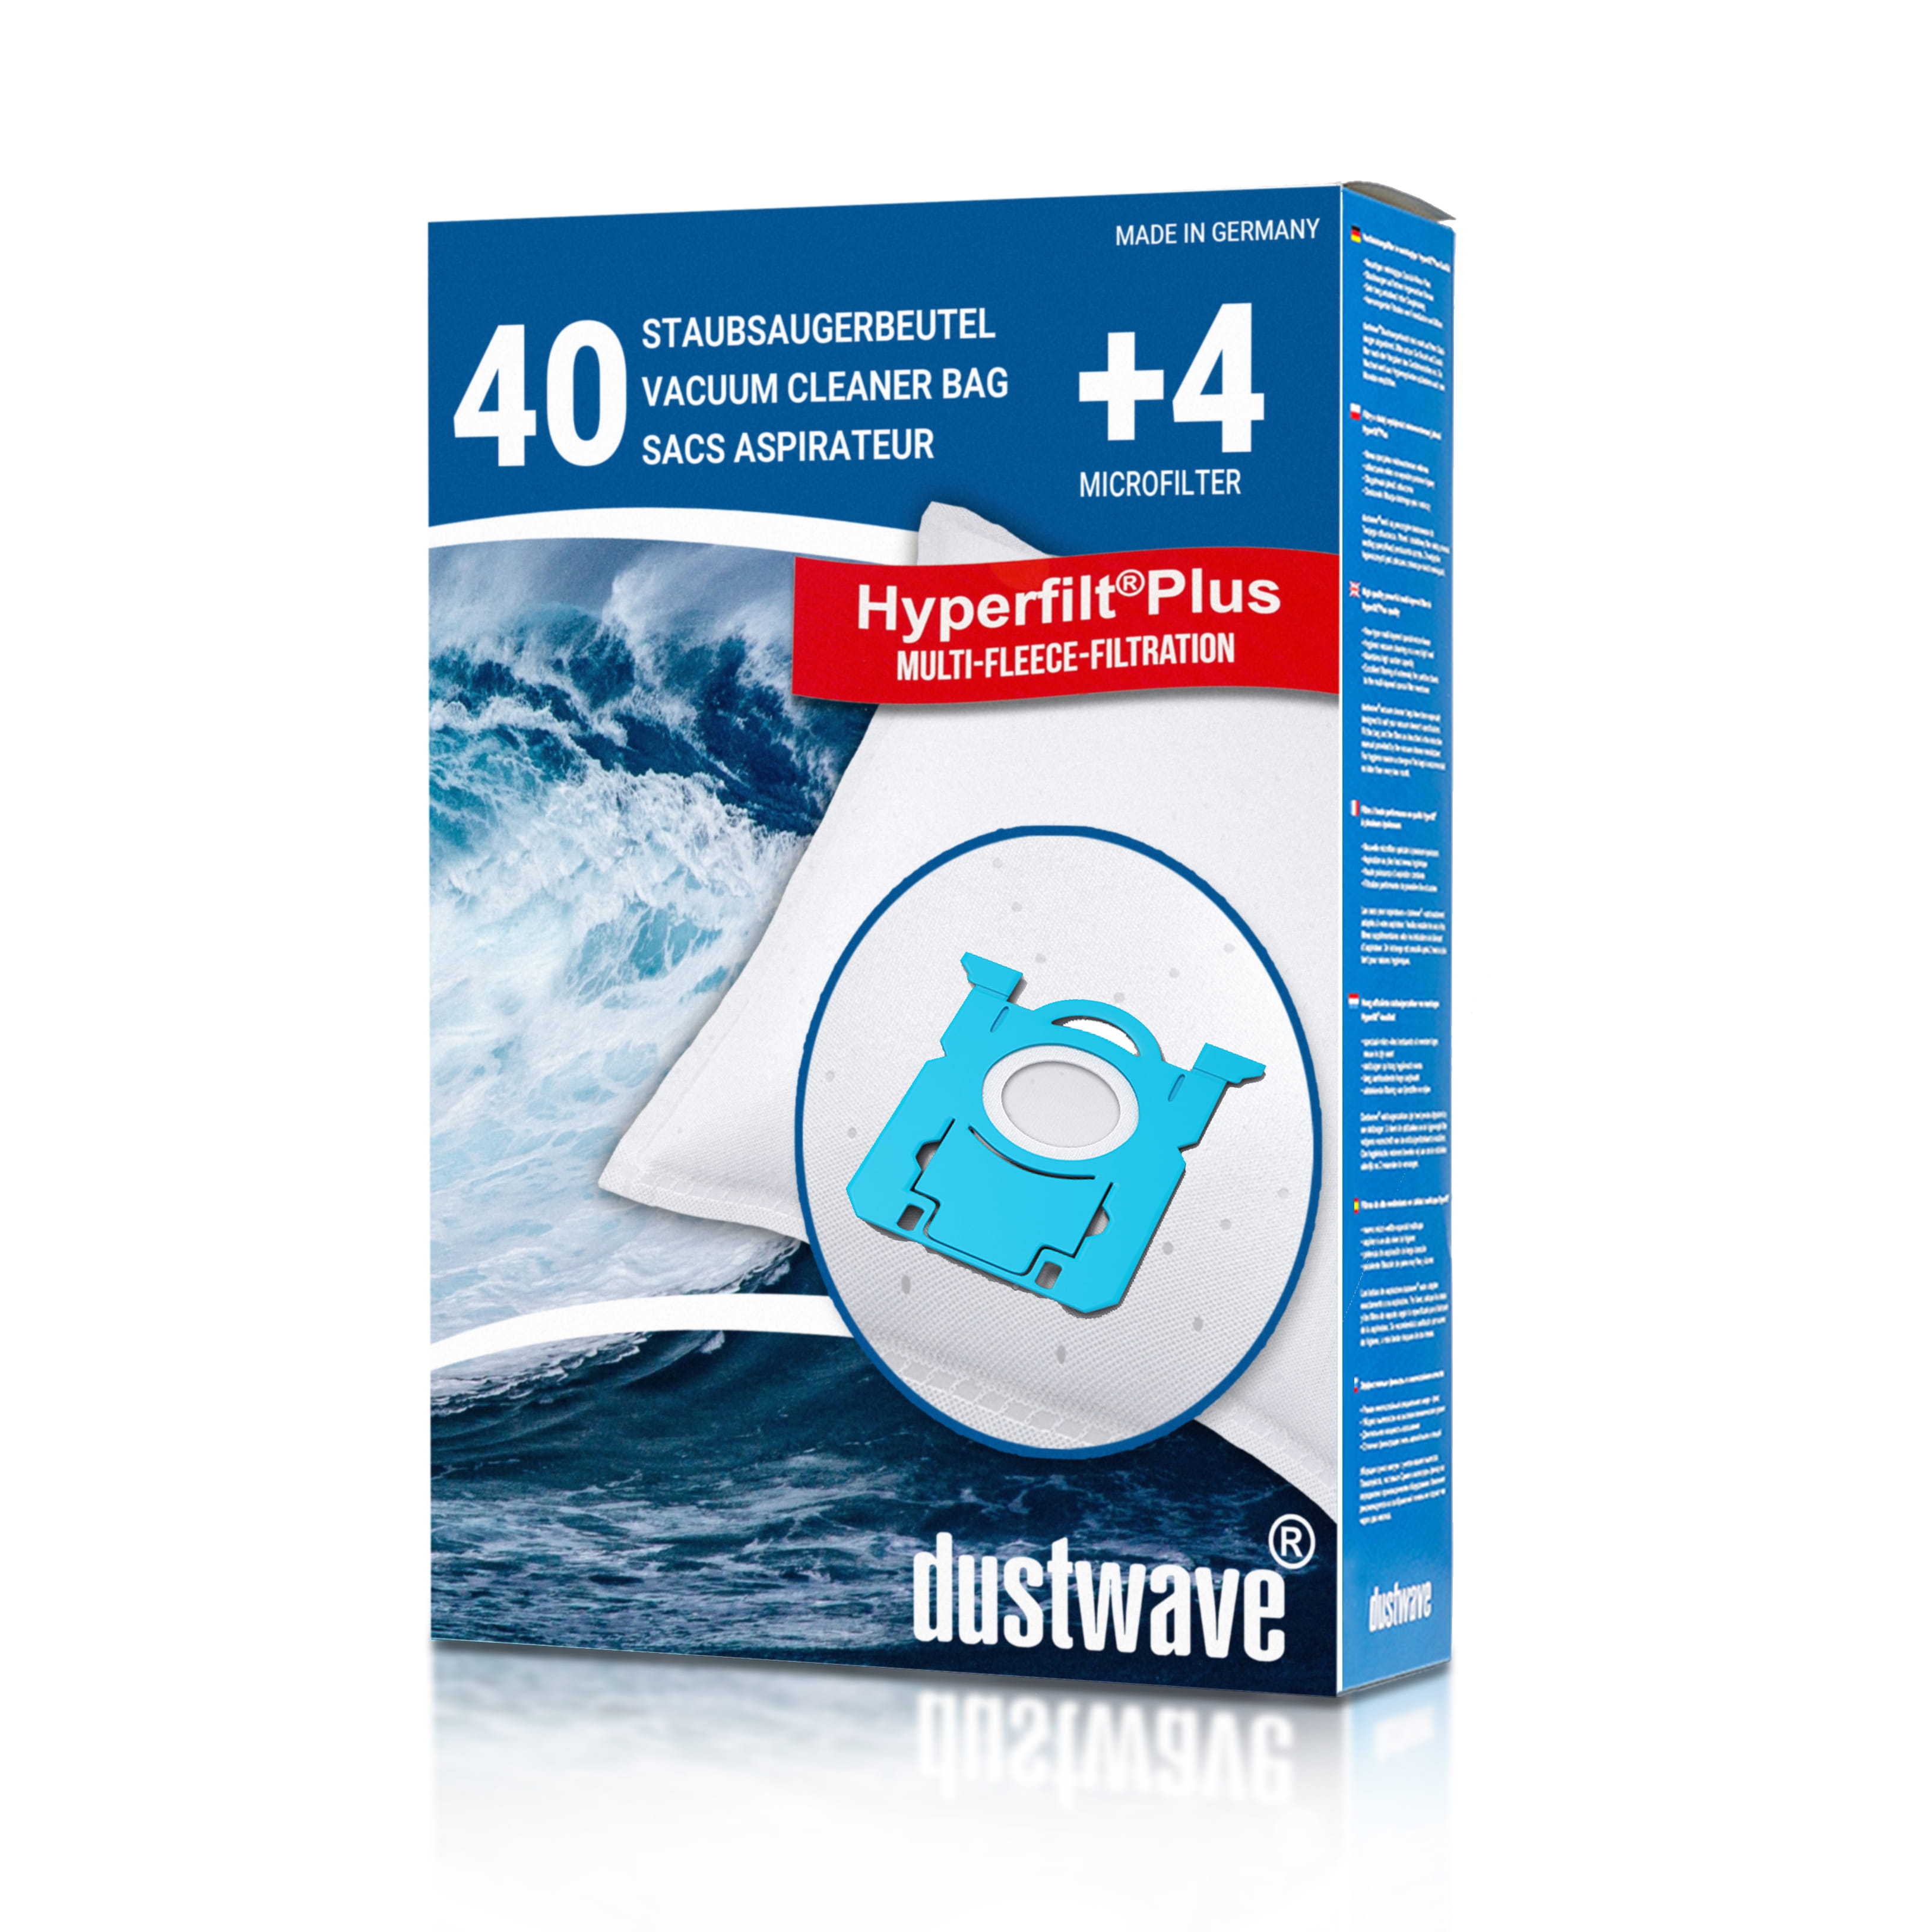 Dustwave® 40 Staubsaugerbeutel für AEG GR212 / Größe 212 - hocheffizient, mehrlagiges Mikrovlies mit Hygieneverschluss - Made in Germany